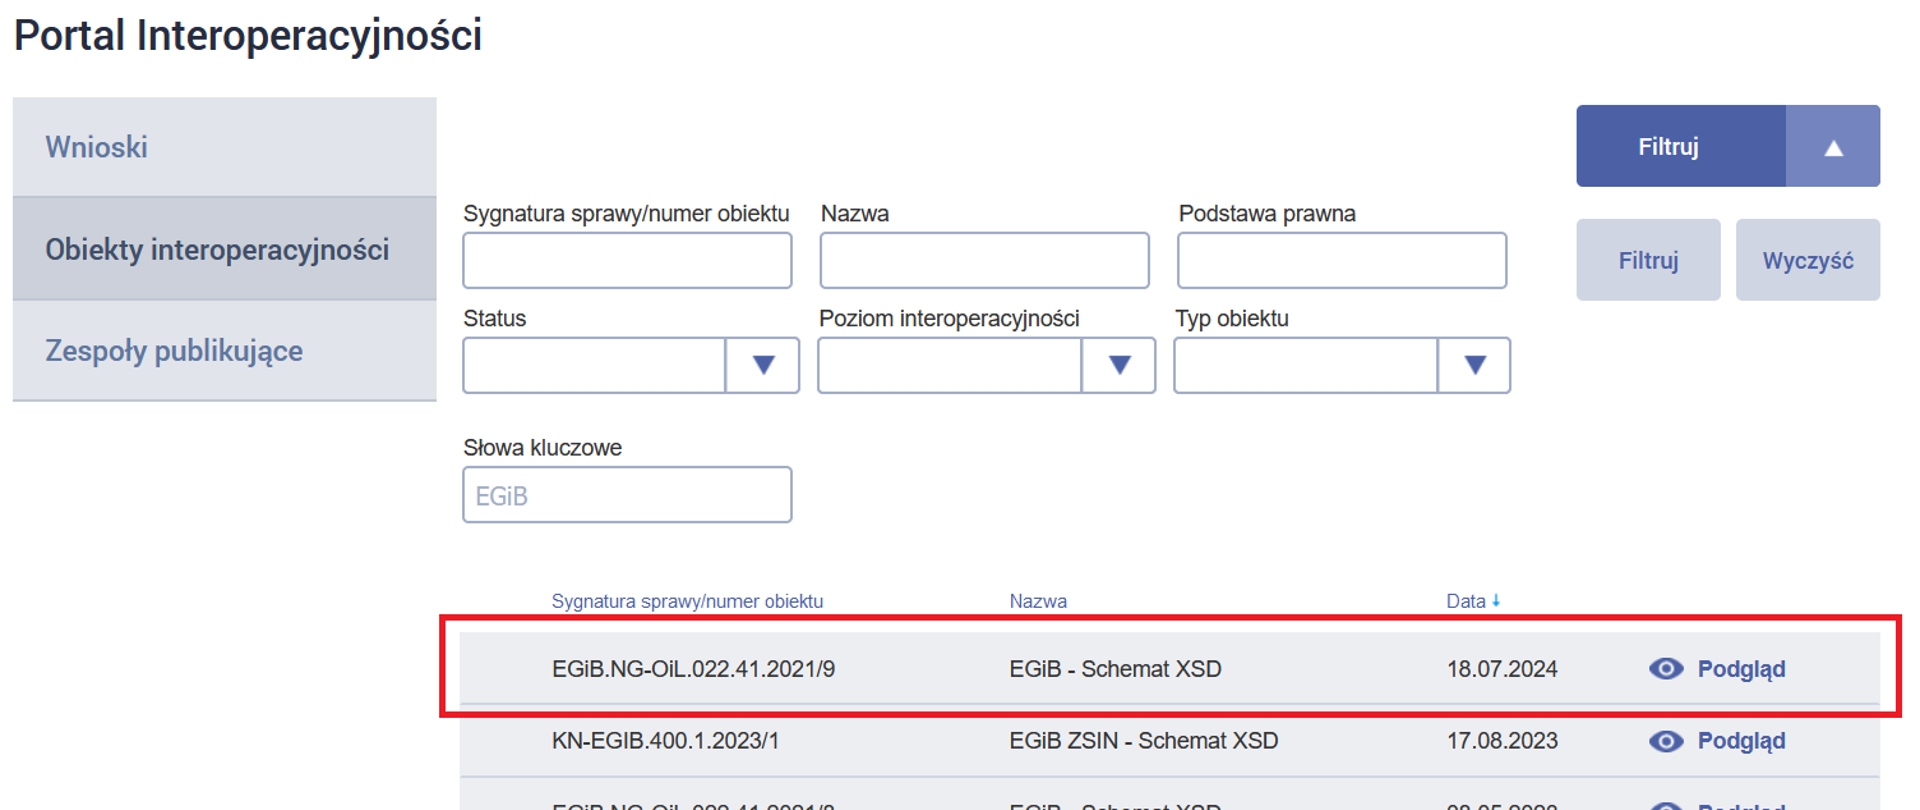 Ilustracja przedstawia zrzut z ekranu serwisu epuap.gov.pl zakładka Portal Interoperacyjności, skąd moźna pobrać schematy aplikacyjne xsd.